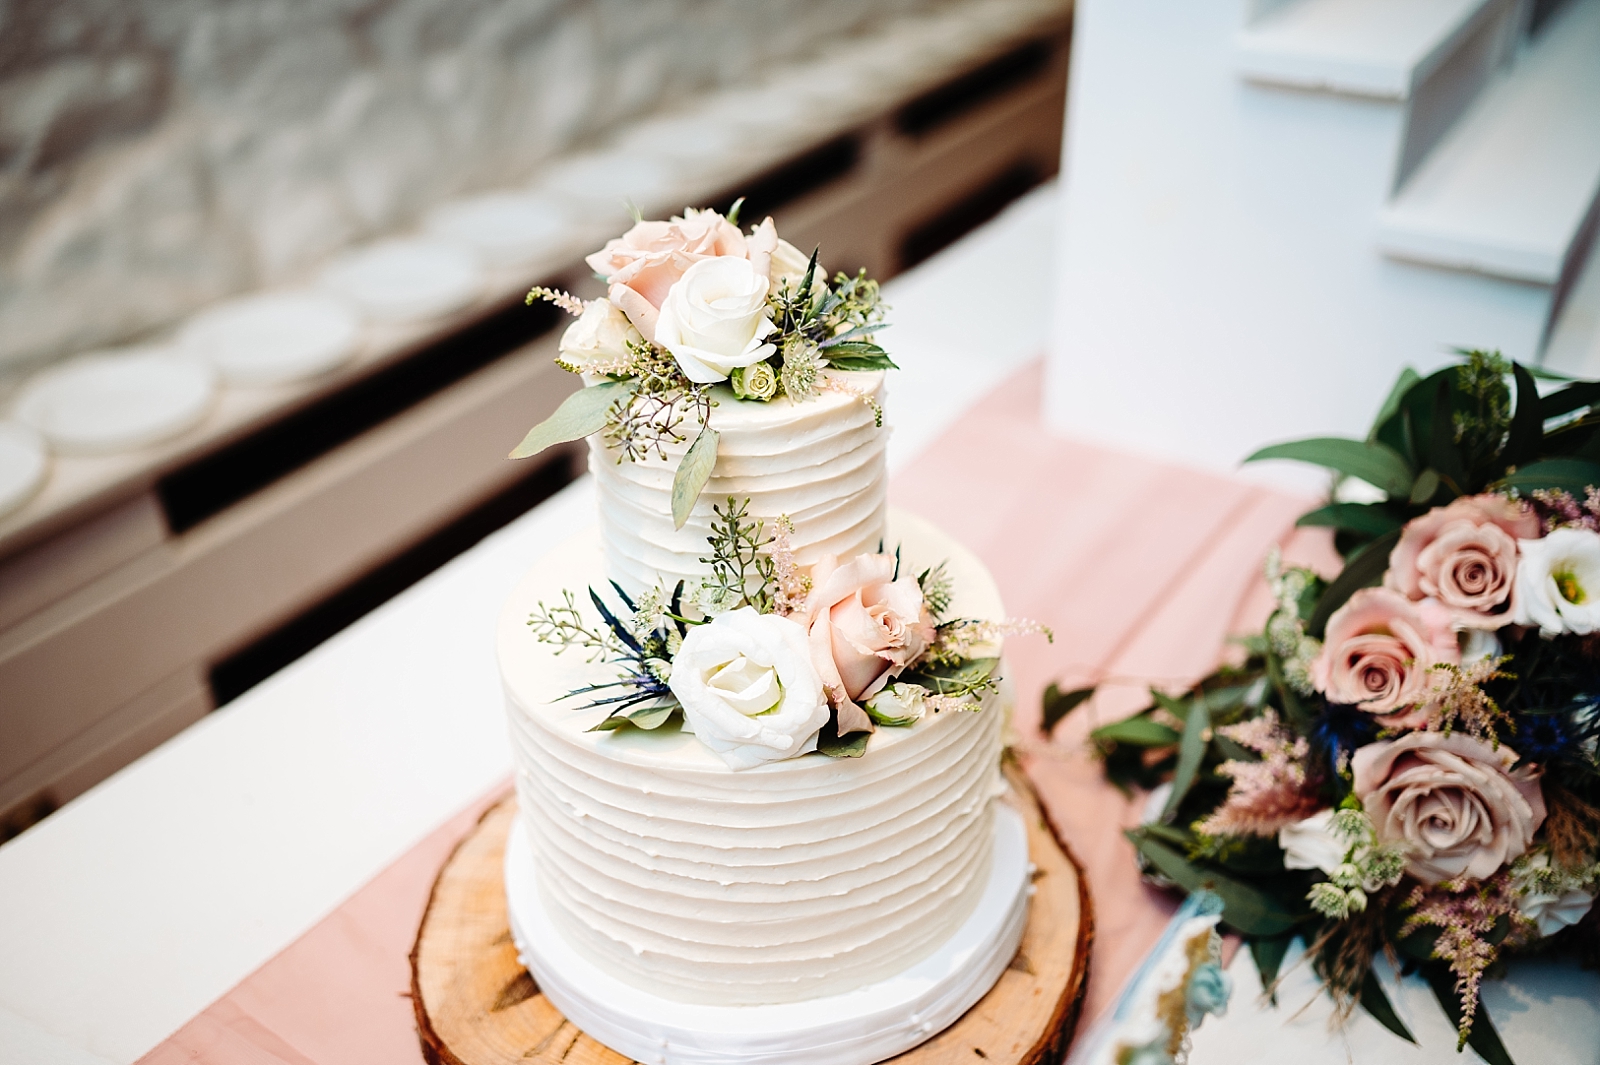 Floral design - Wedding cake